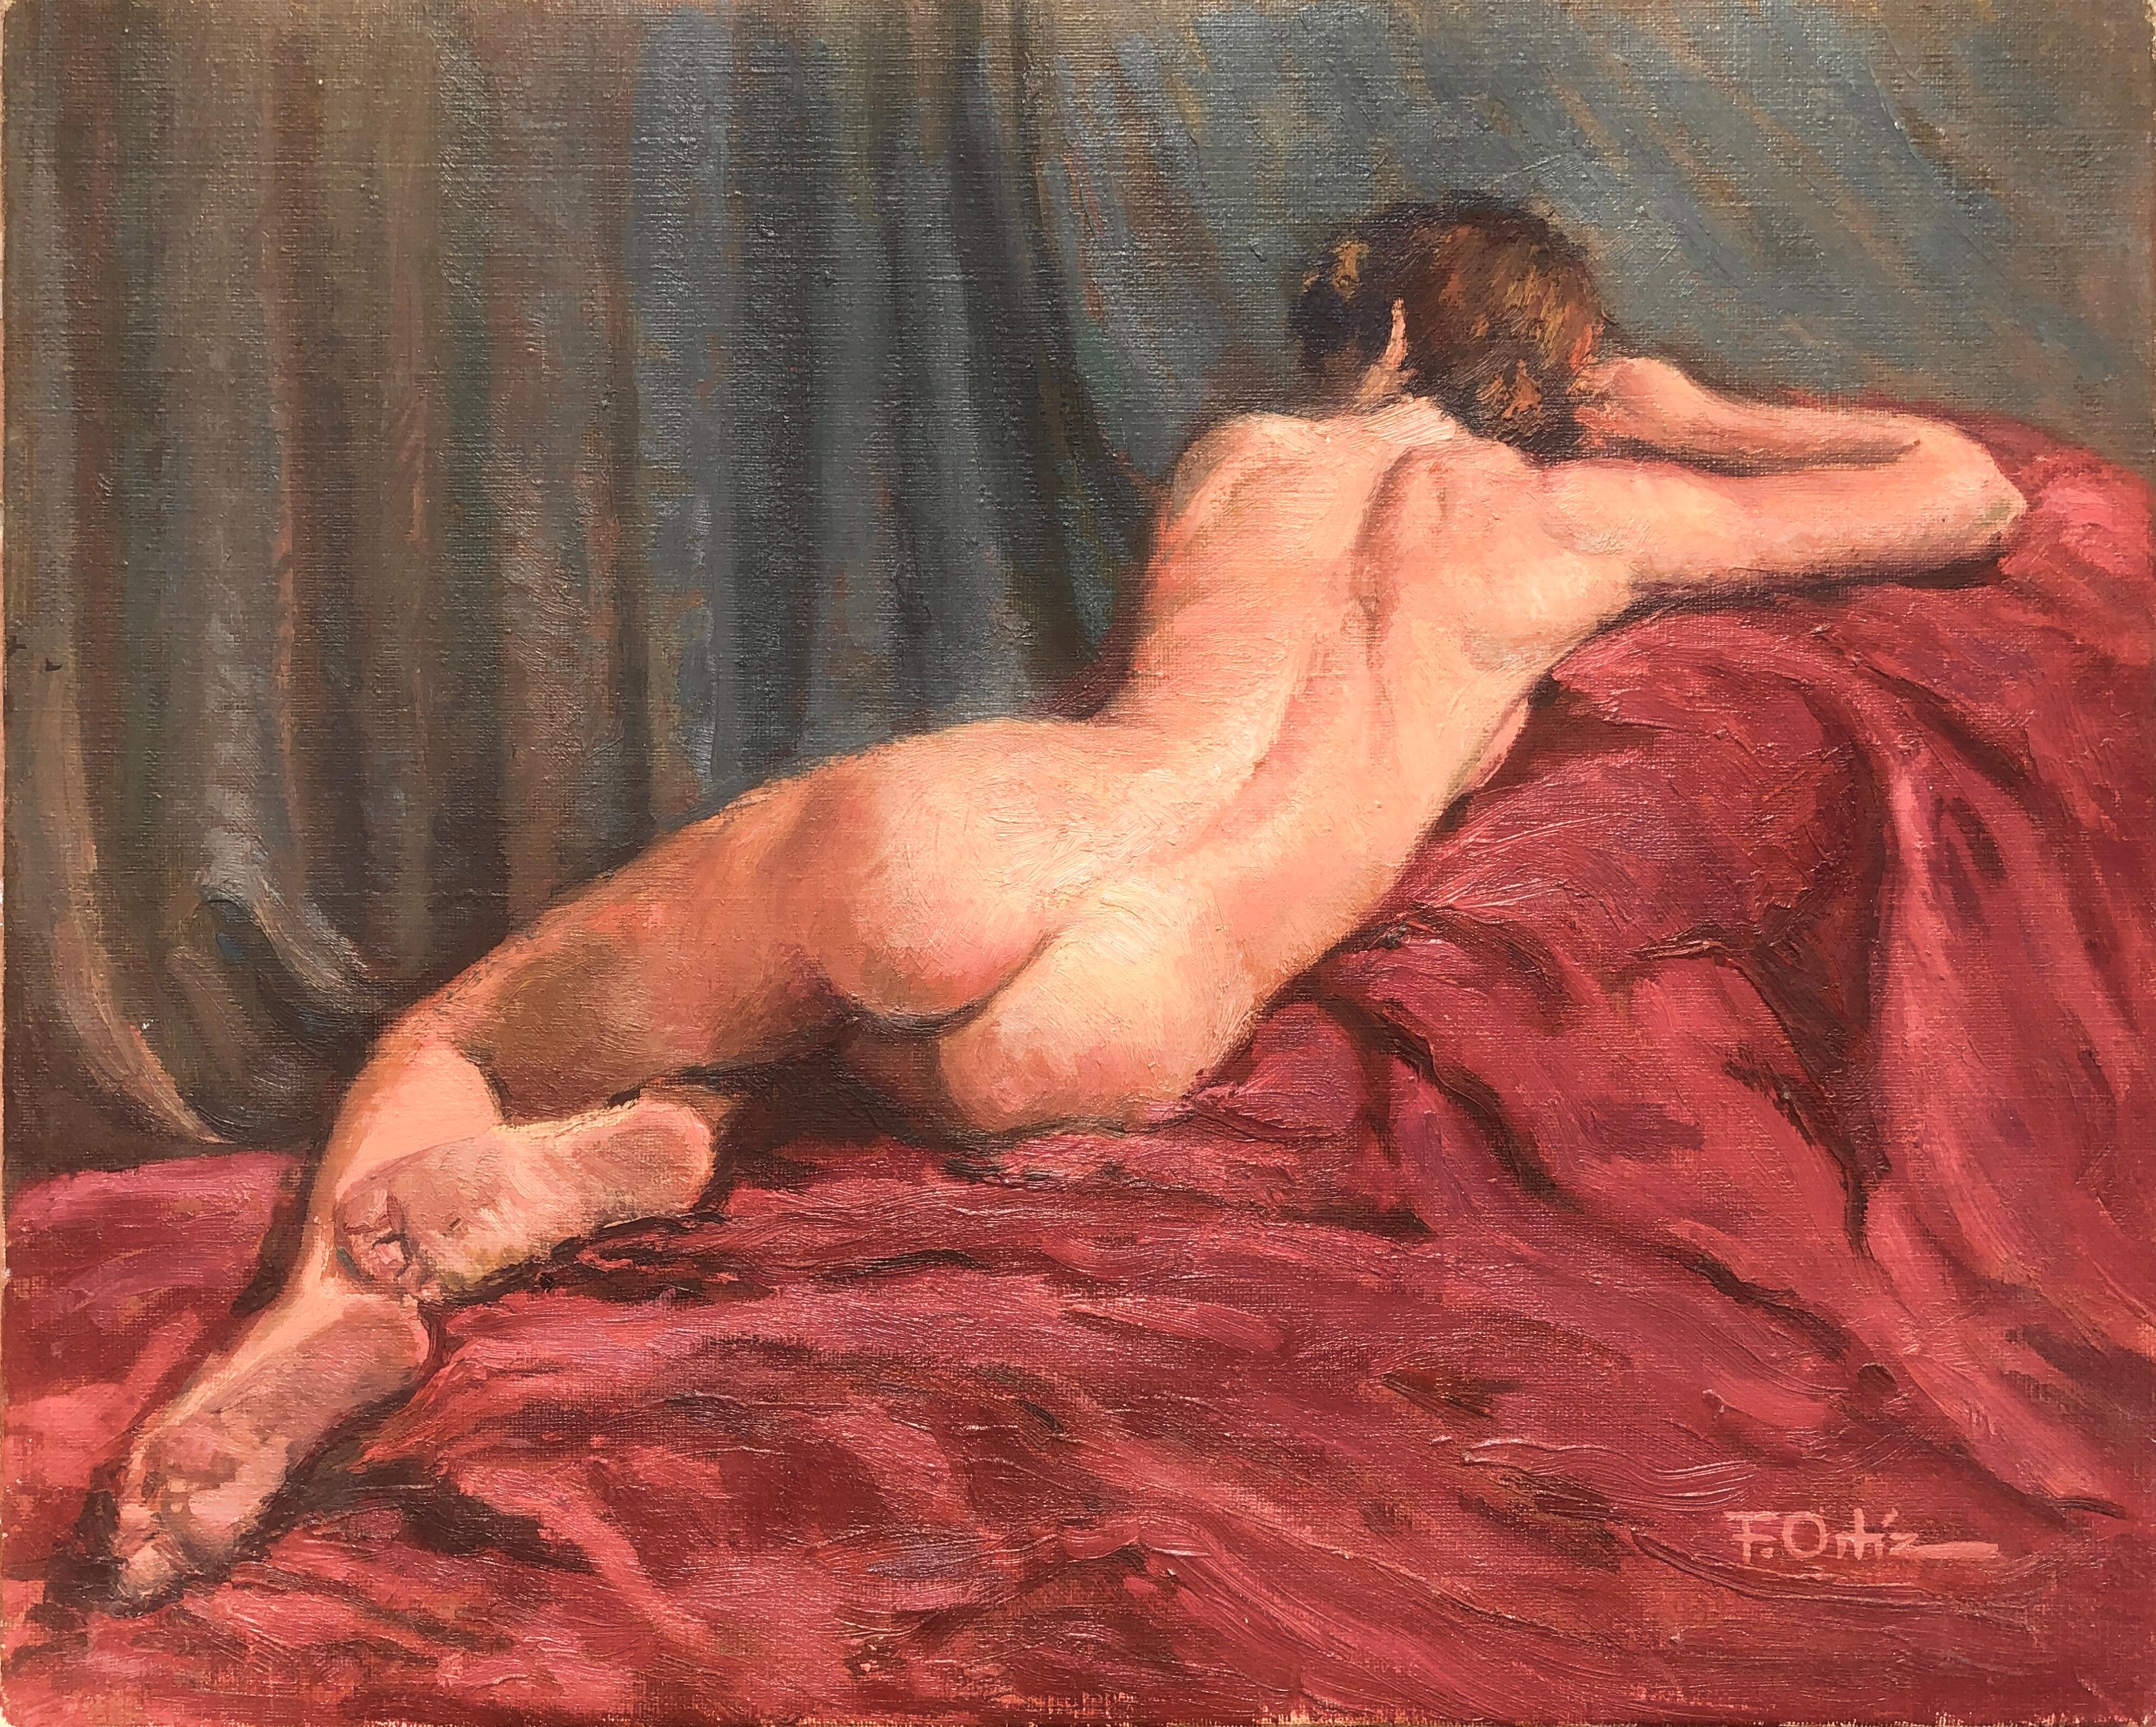 Nude Painting Francisco Ortiz - femme nue femme huile sur toile peinture